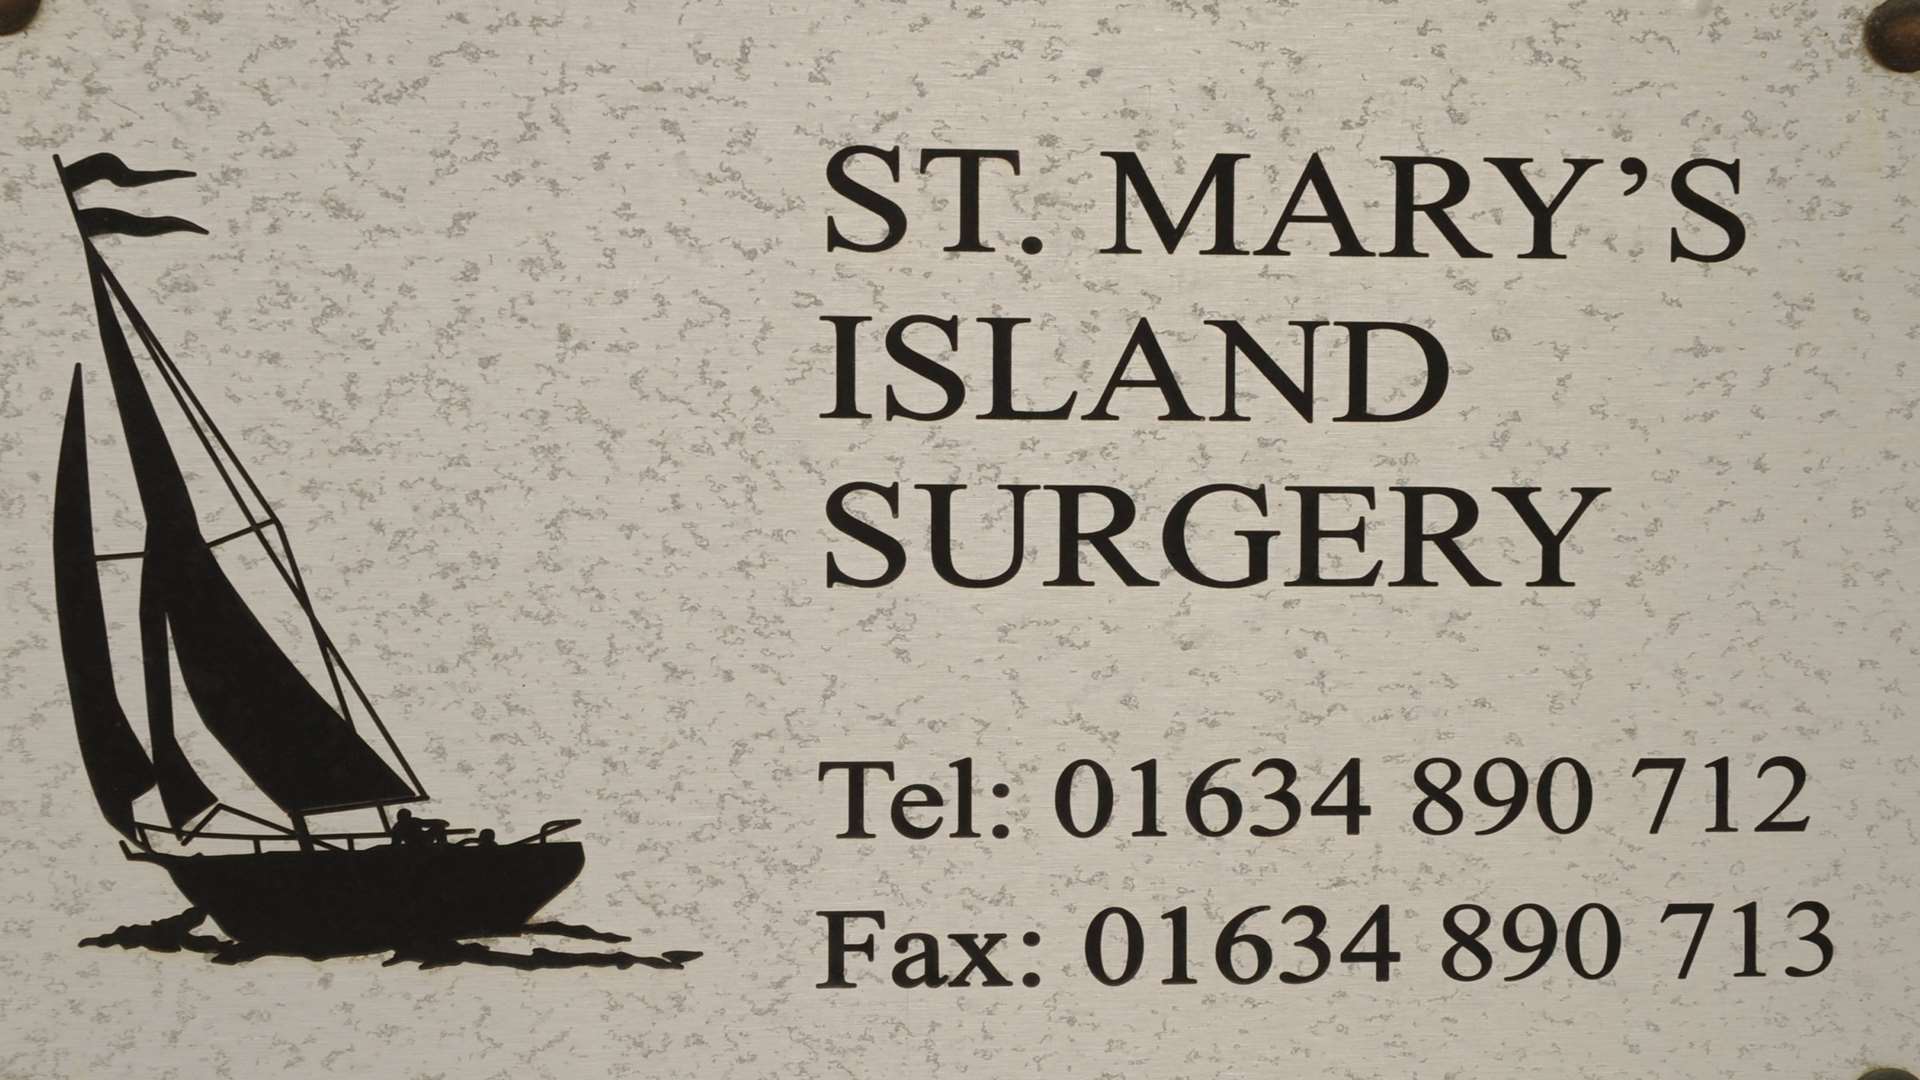 St Mary's Island Surgery